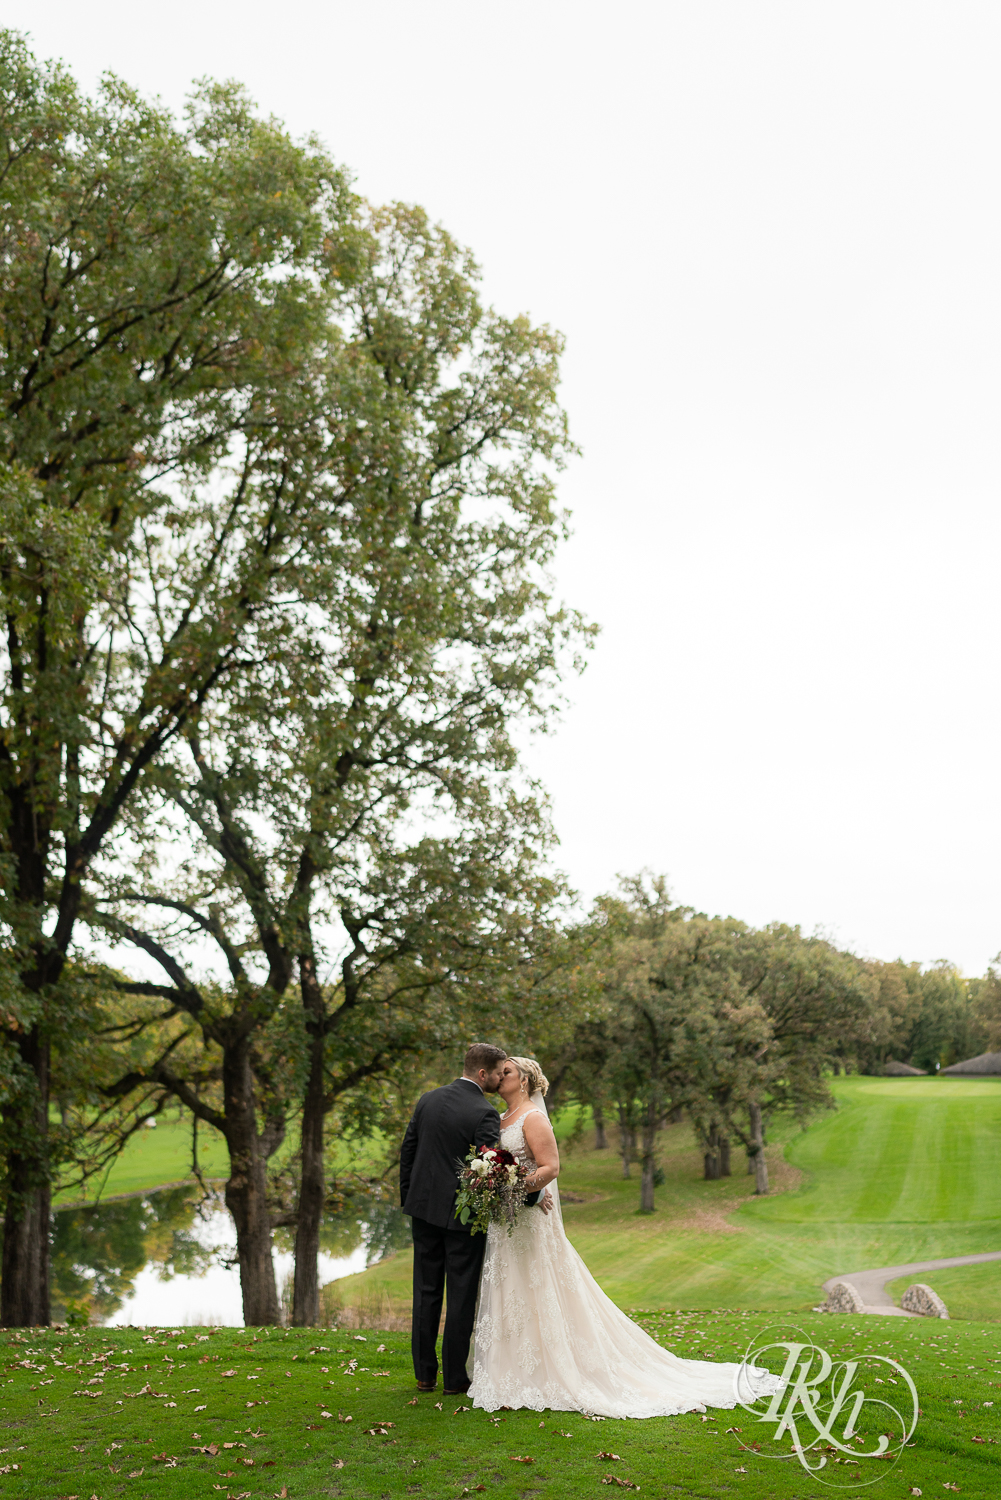 Bride and groom kiss at Hastings Golf Club in Hastings, Minnesota.